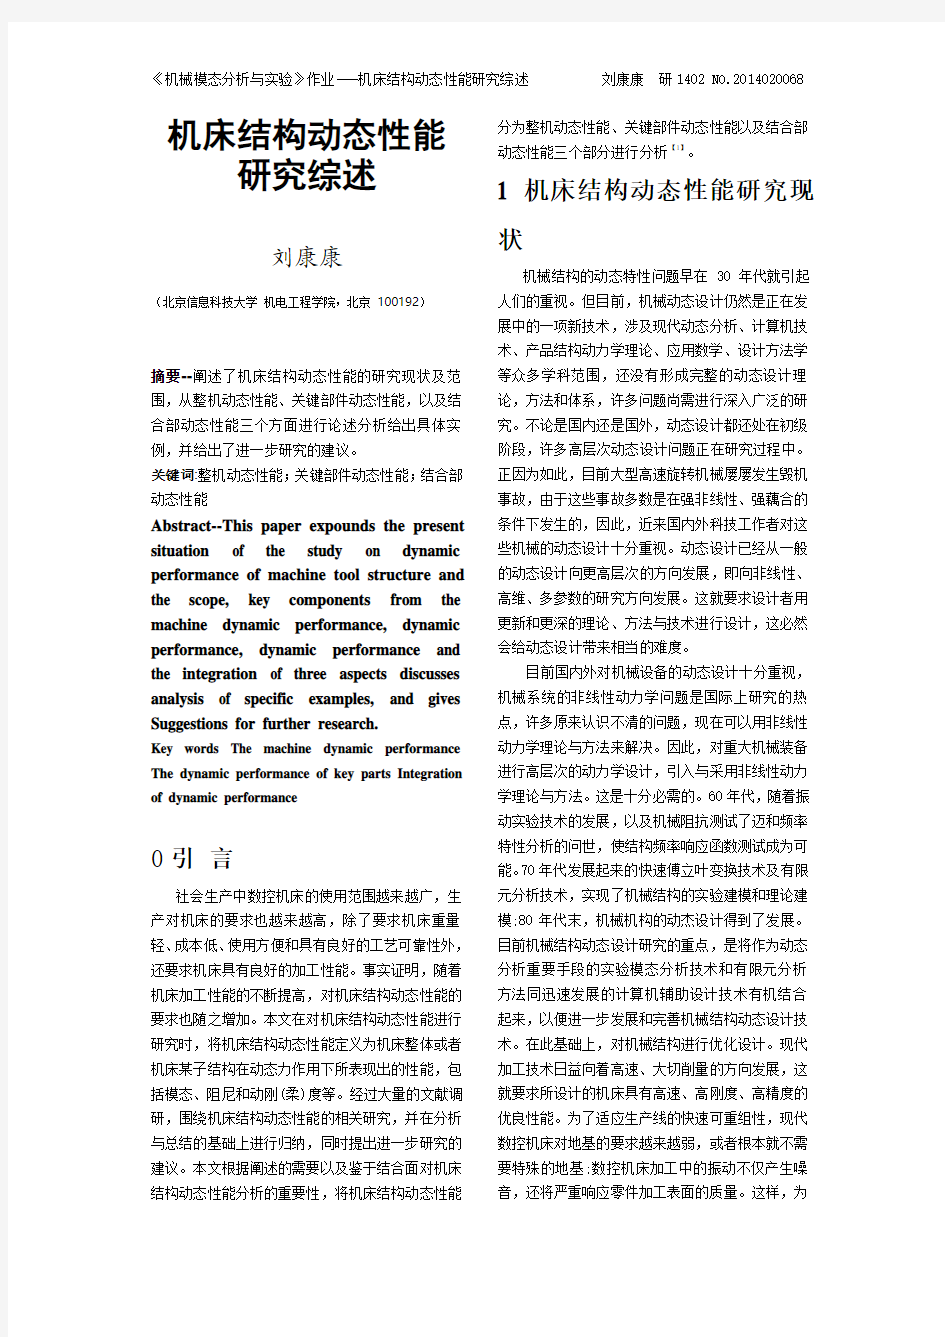 机床结构动态性能研究综述-刘康康-2015-4-22